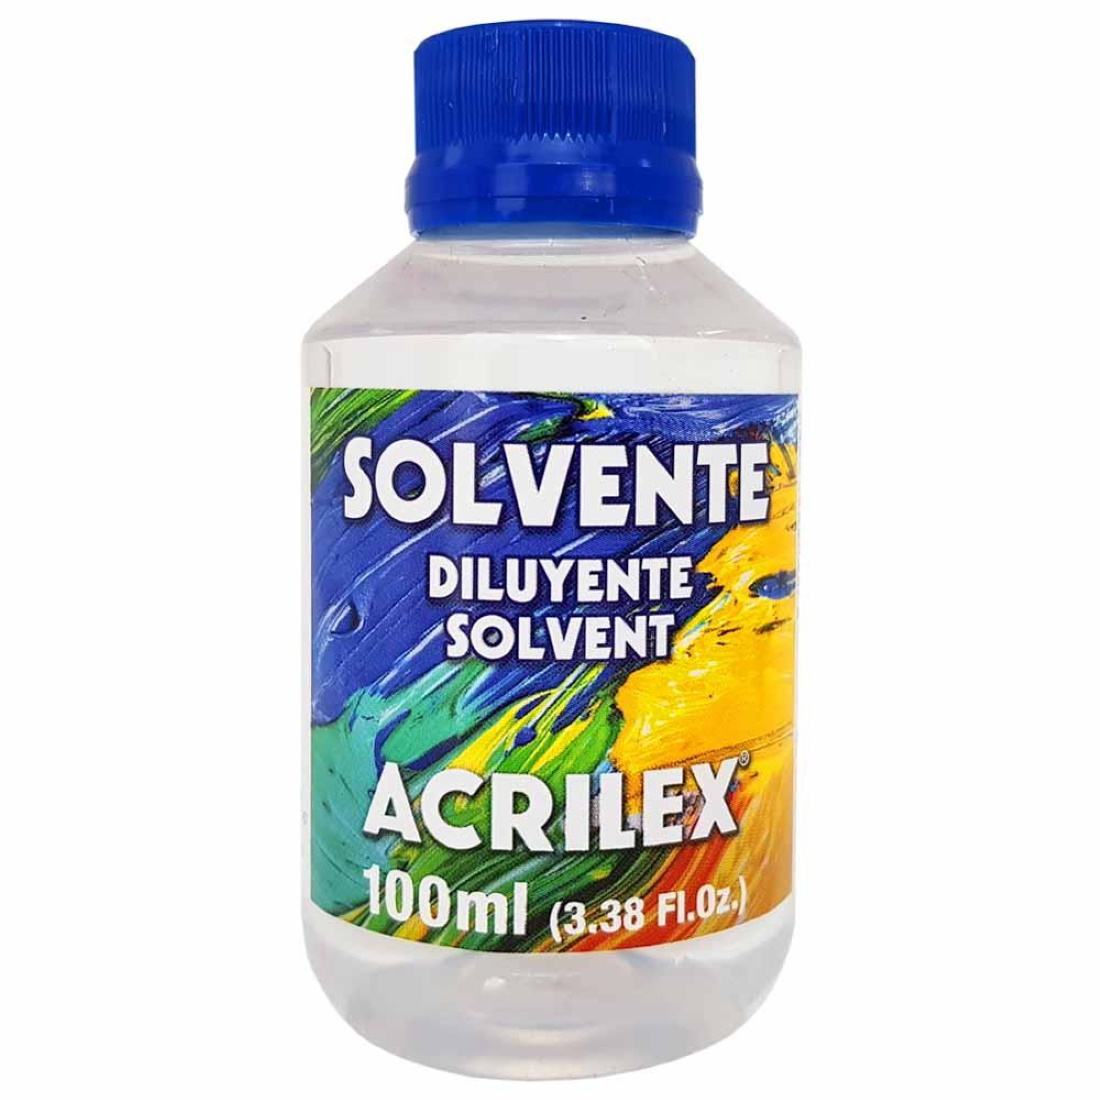 Solvente Acrilex